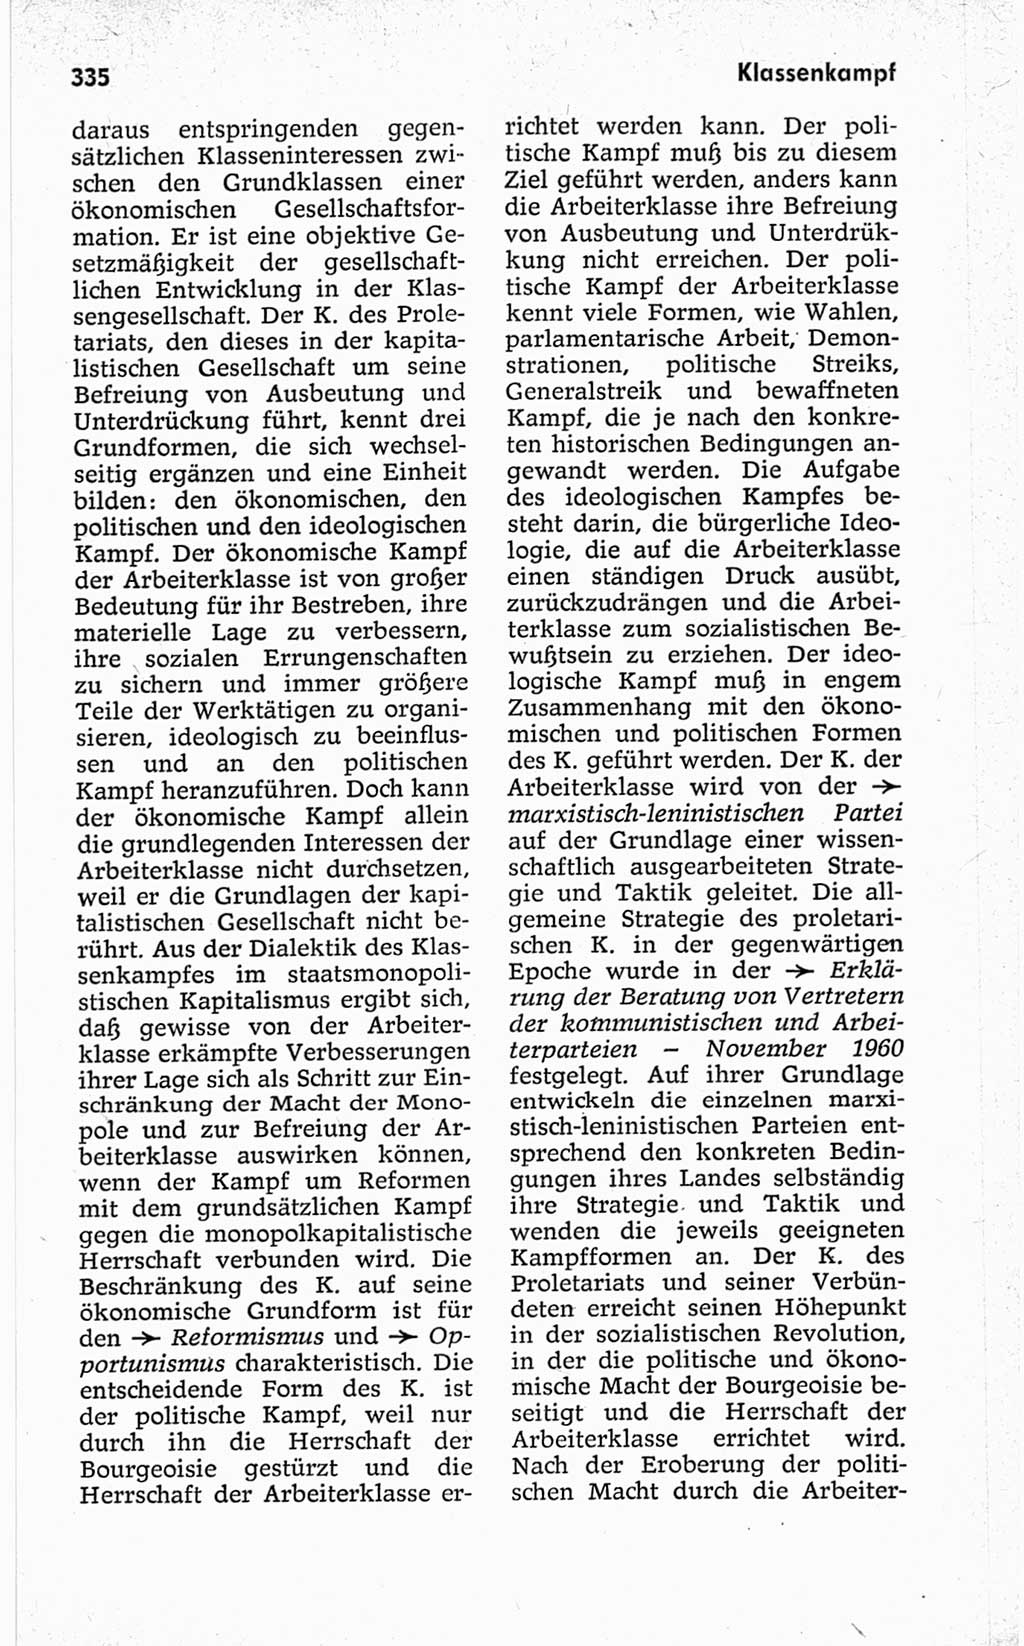 Kleines politisches Wörterbuch [Deutsche Demokratische Republik (DDR)] 1967, Seite 335 (Kl. pol. Wb. DDR 1967, S. 335)